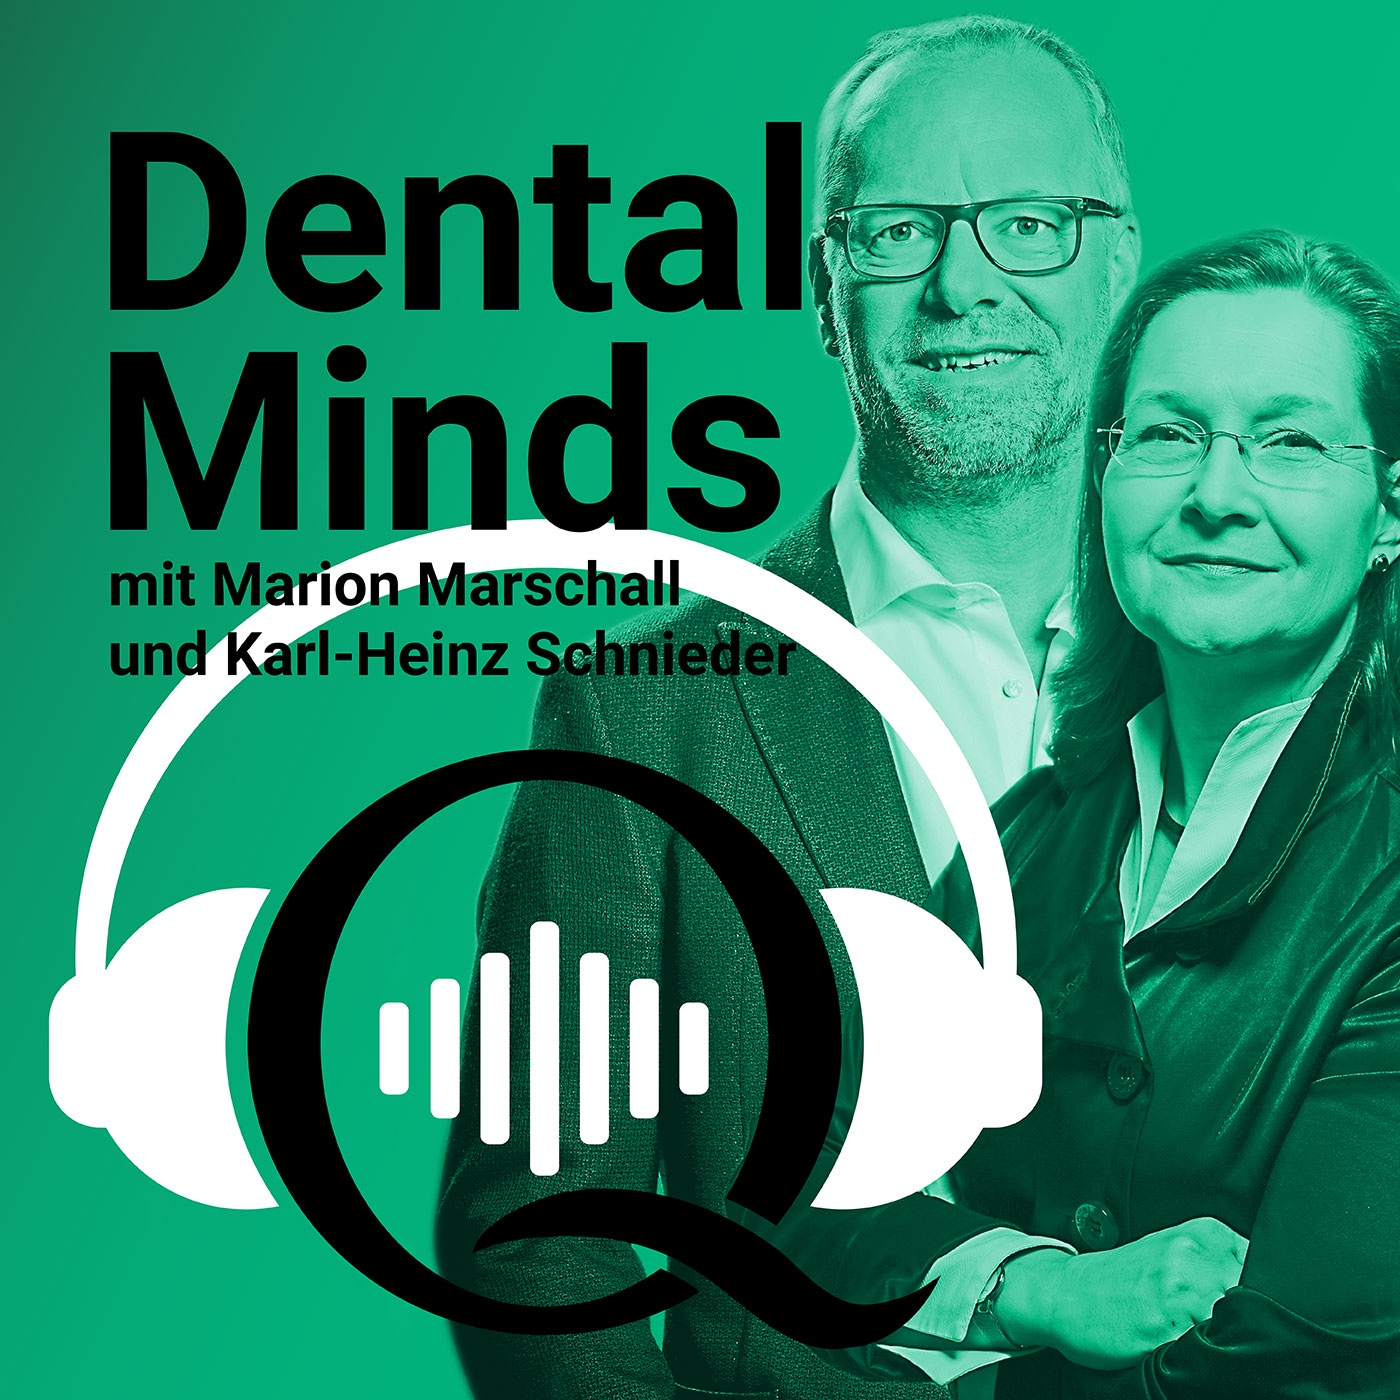 Trailer: Dental Minds